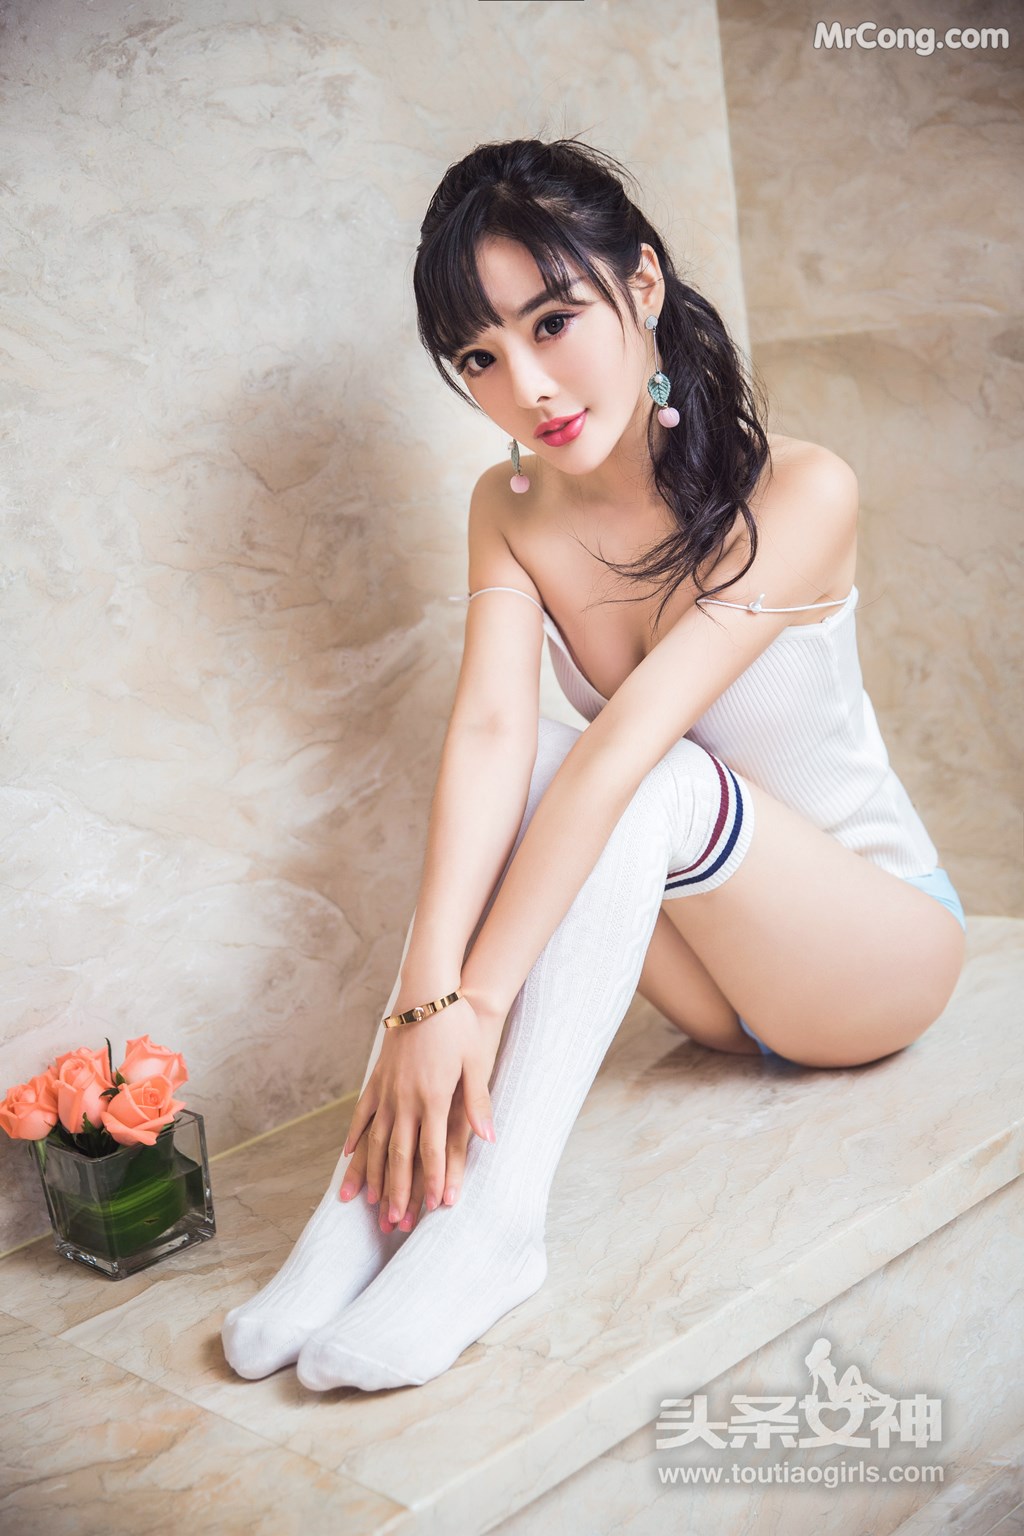 TouTiao 2017-07-30: Model Zhou Xi Yan (周 熙 妍) (62 photos)